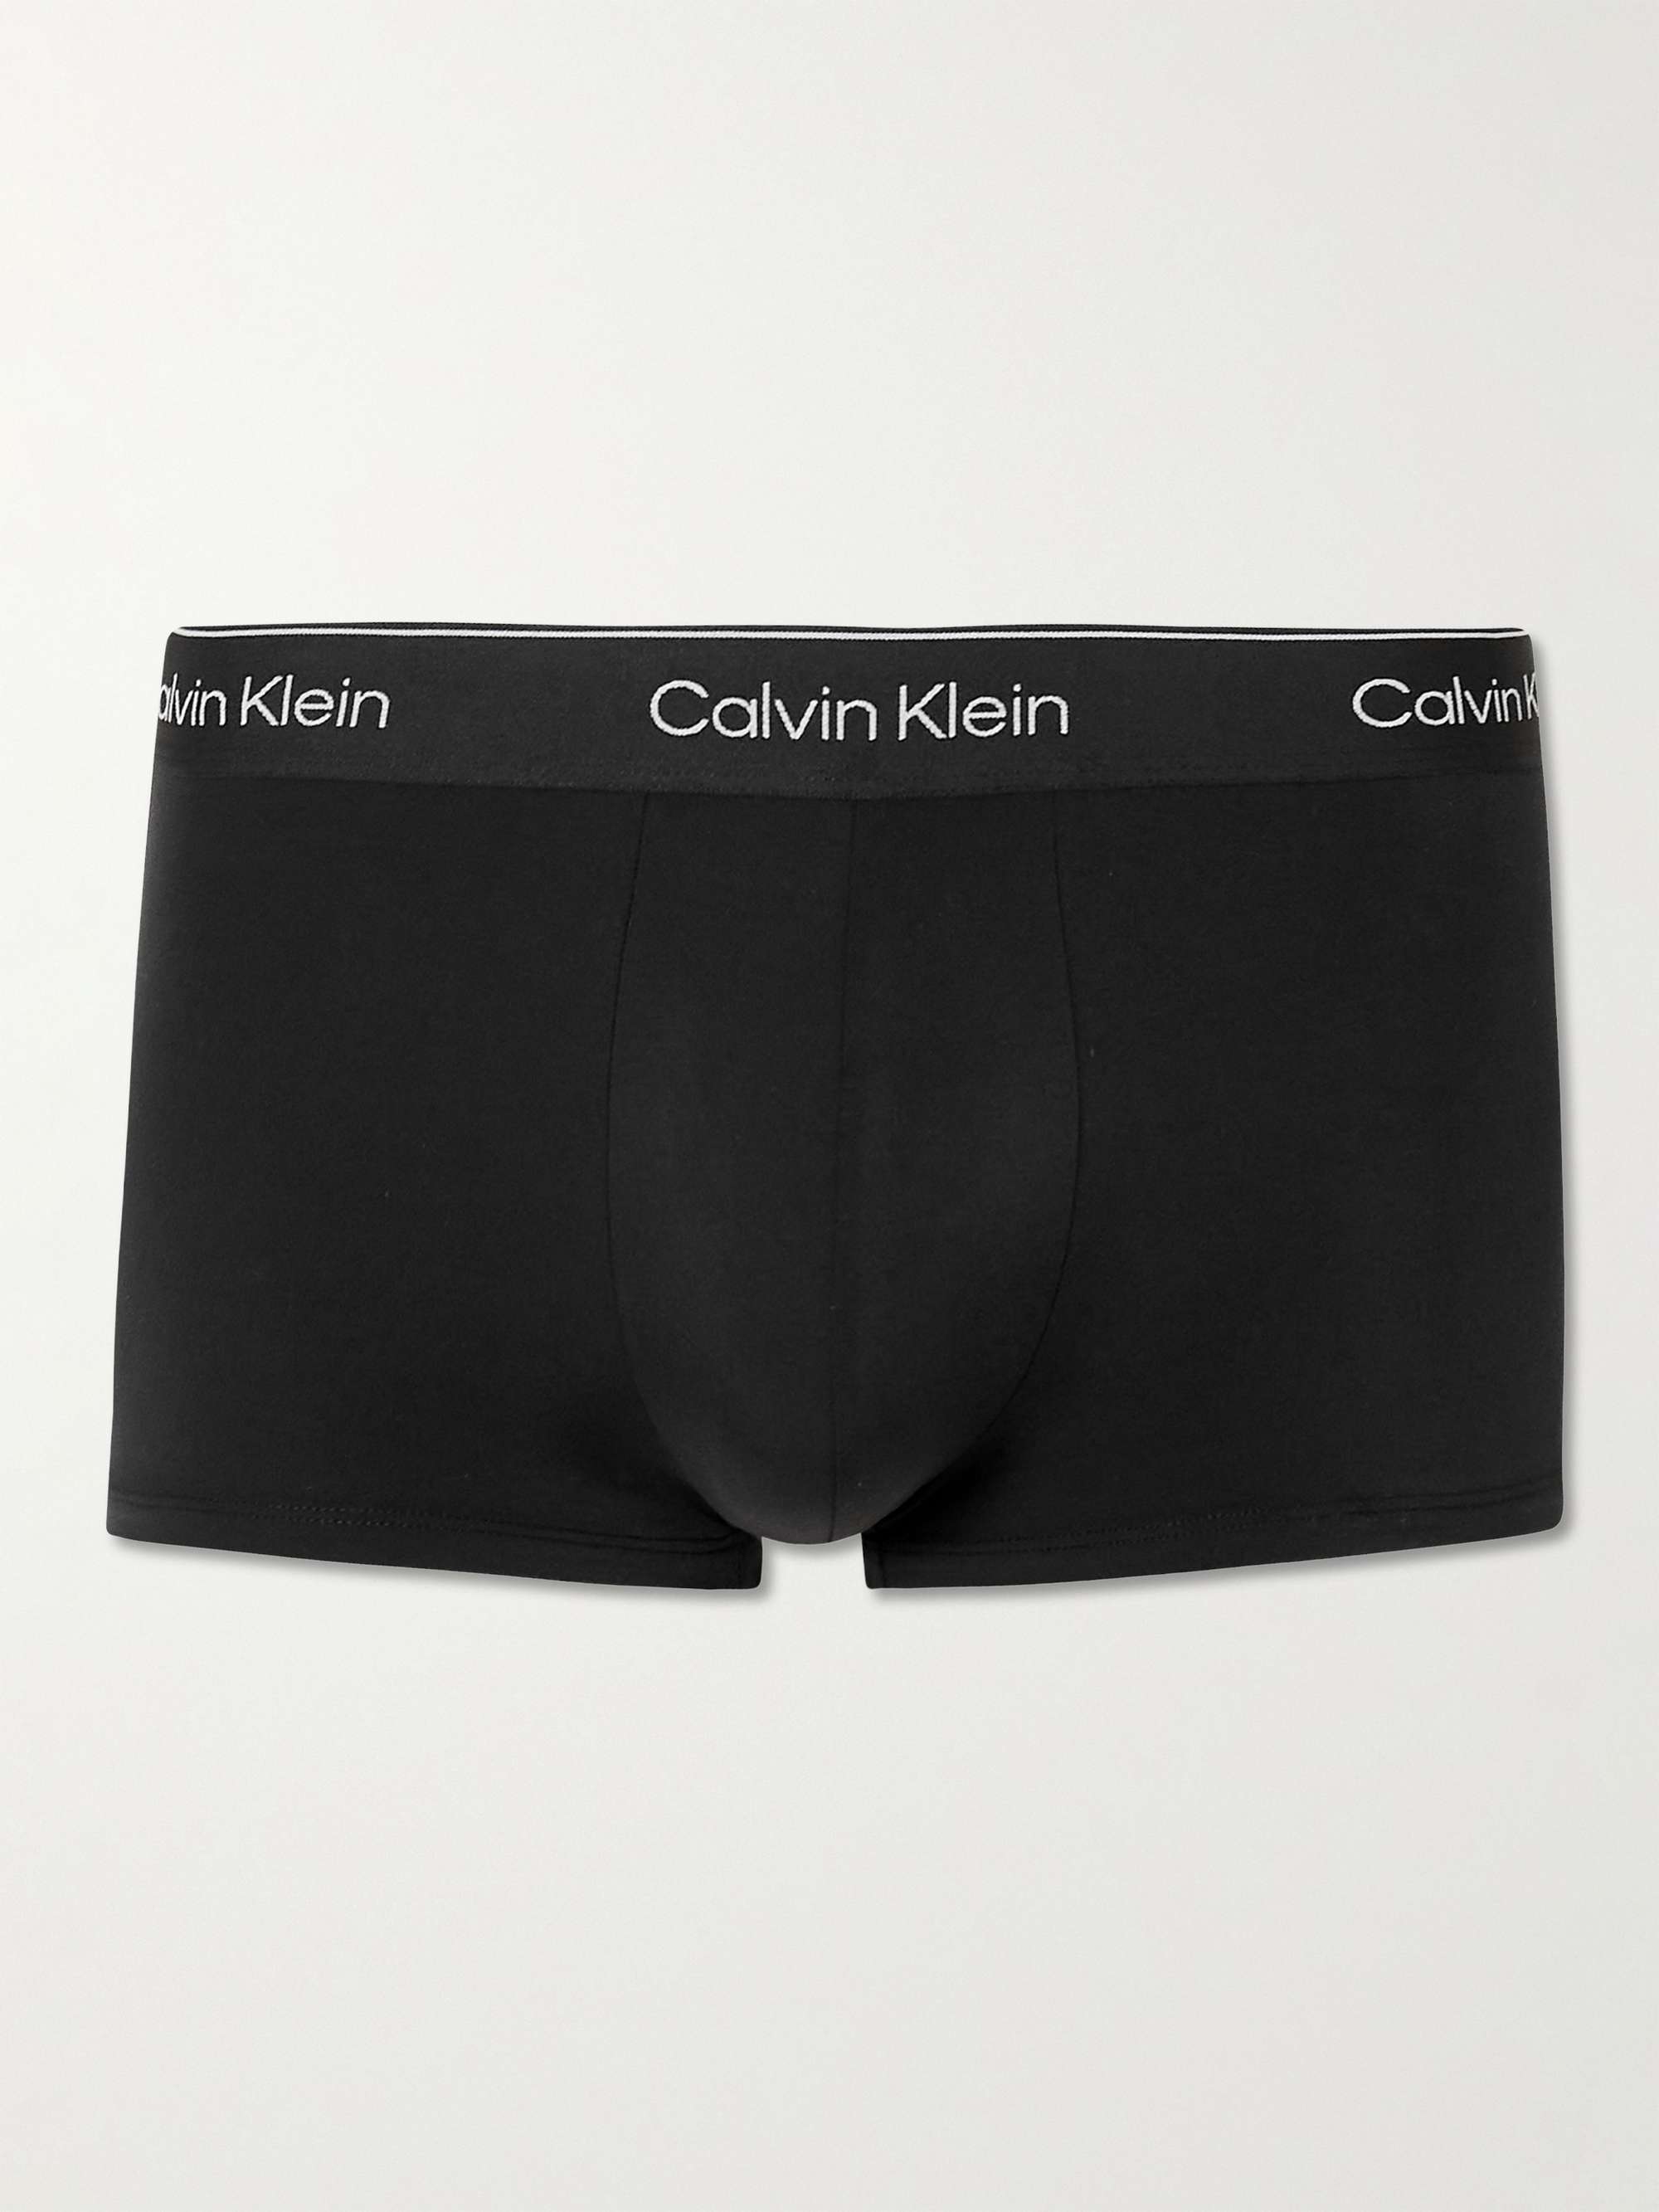 Calvin klein boxer briefs • Compare best prices now »